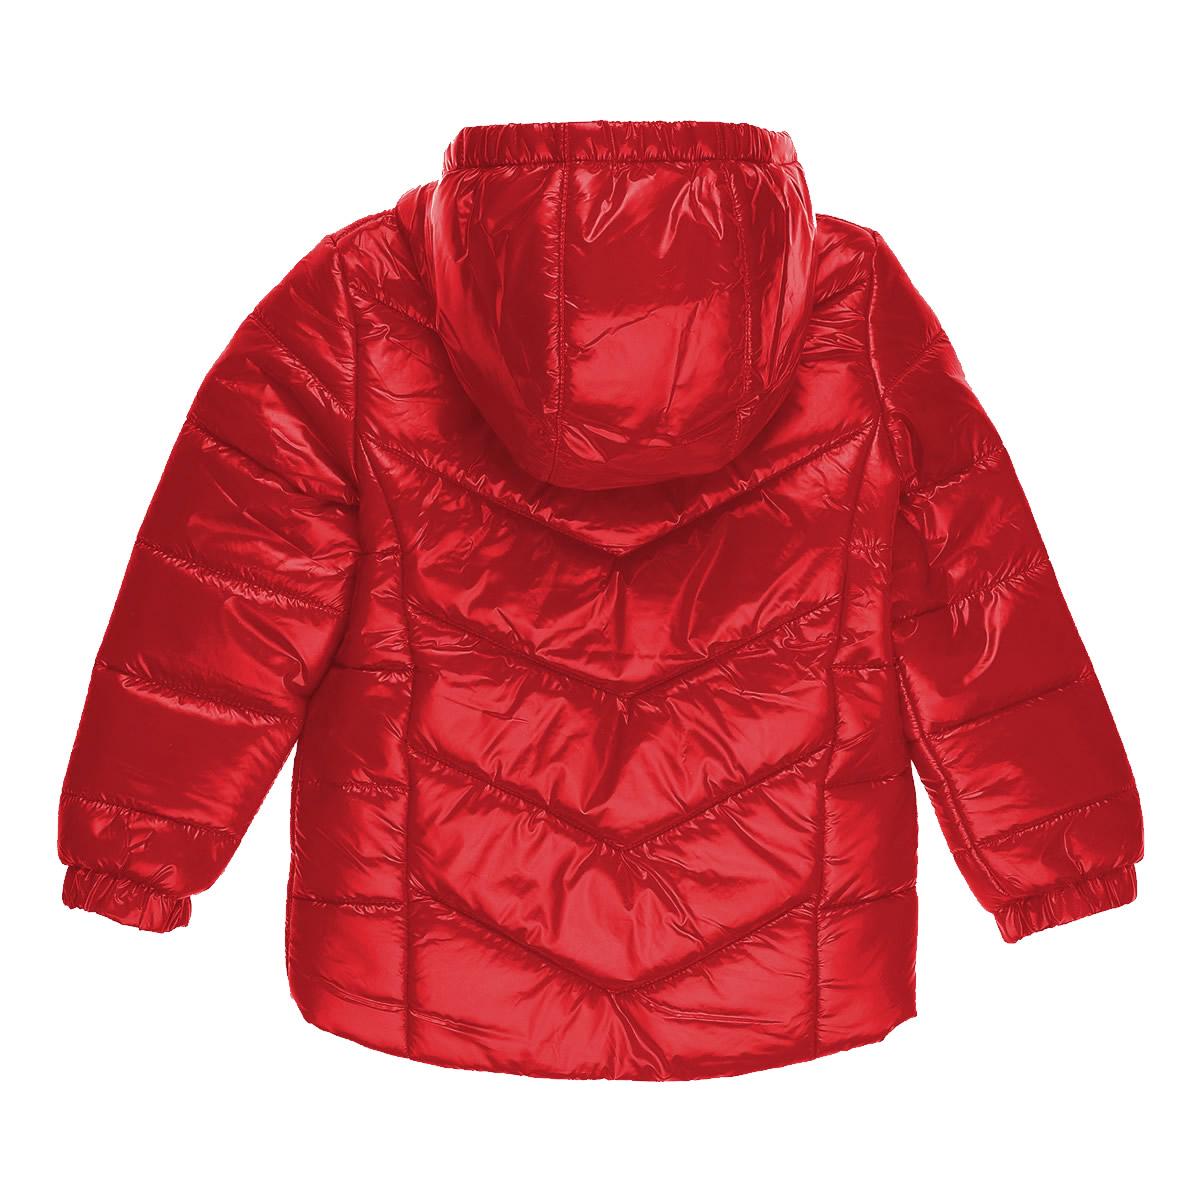 Детская демисезонная куртка для девочки, красная (27-ВД-20), Evolution